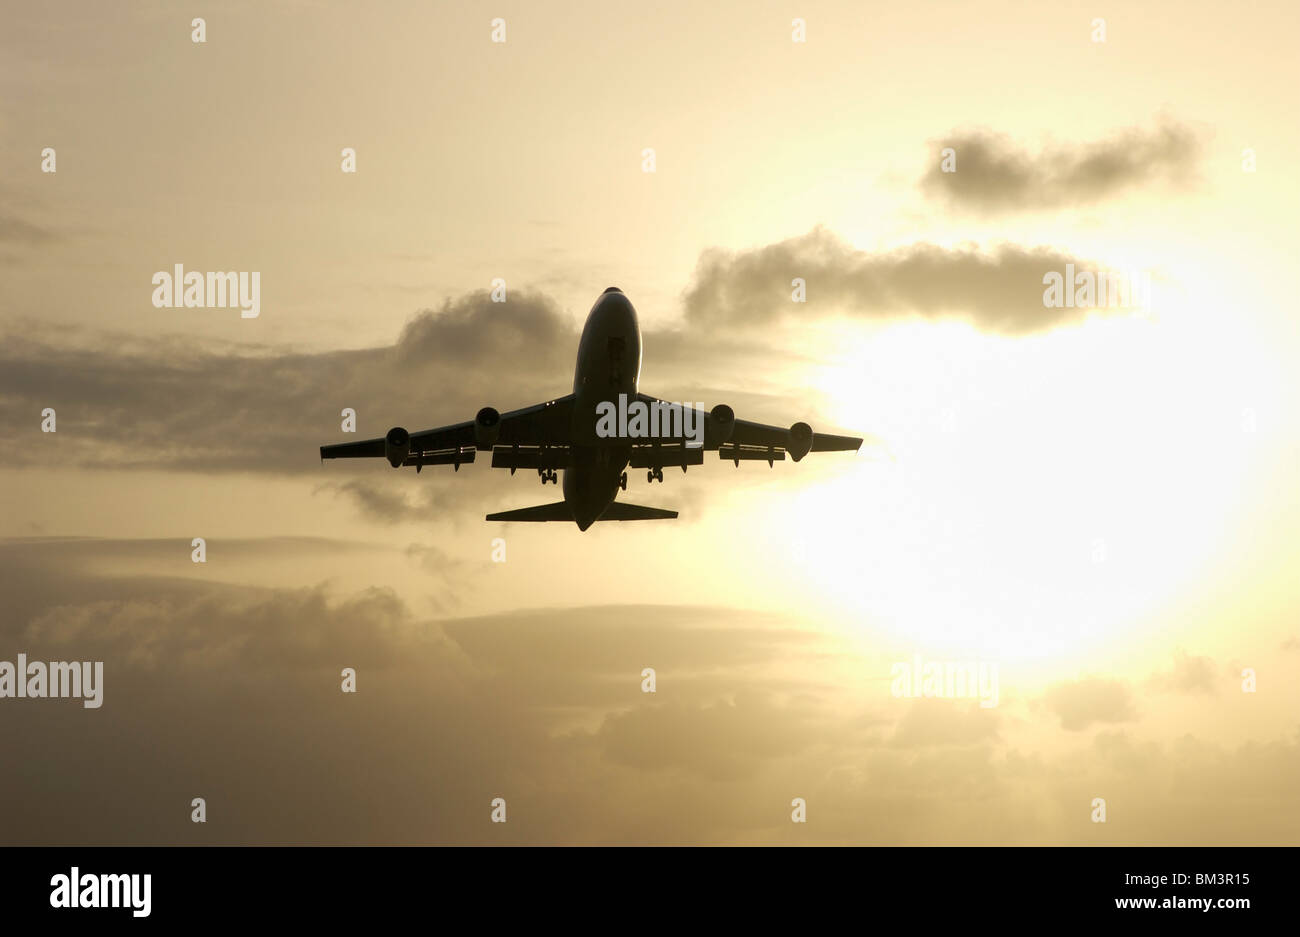 Un Boeing 747 jumbo jet au départ de l'aéroport de Point à Pitre (PTP) au coucher du soleil, la Guadeloupe FR Banque D'Images